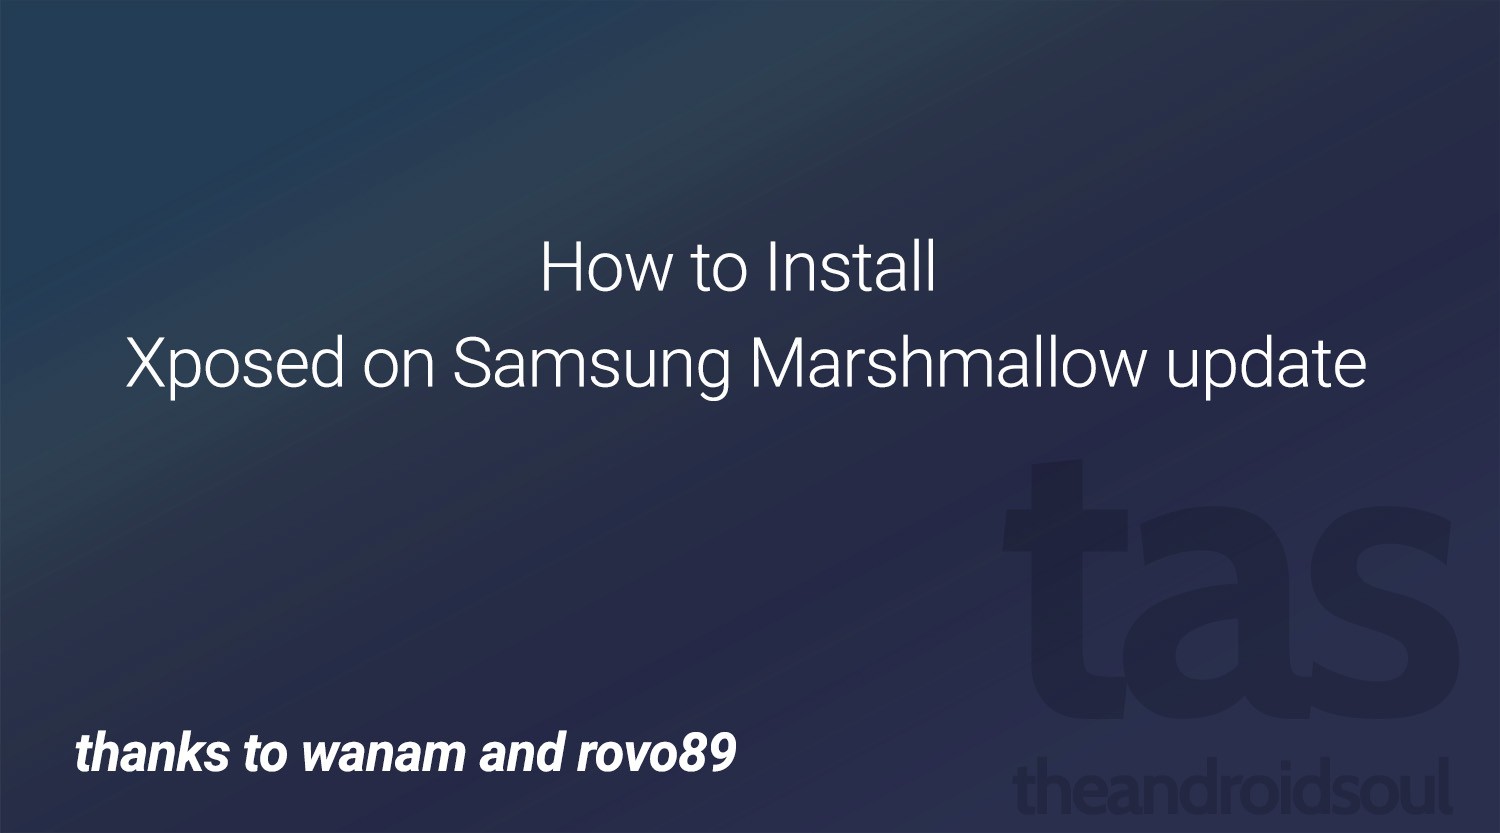 Marshmallow Xposed para Samsung Galaxy S6 ya disponible